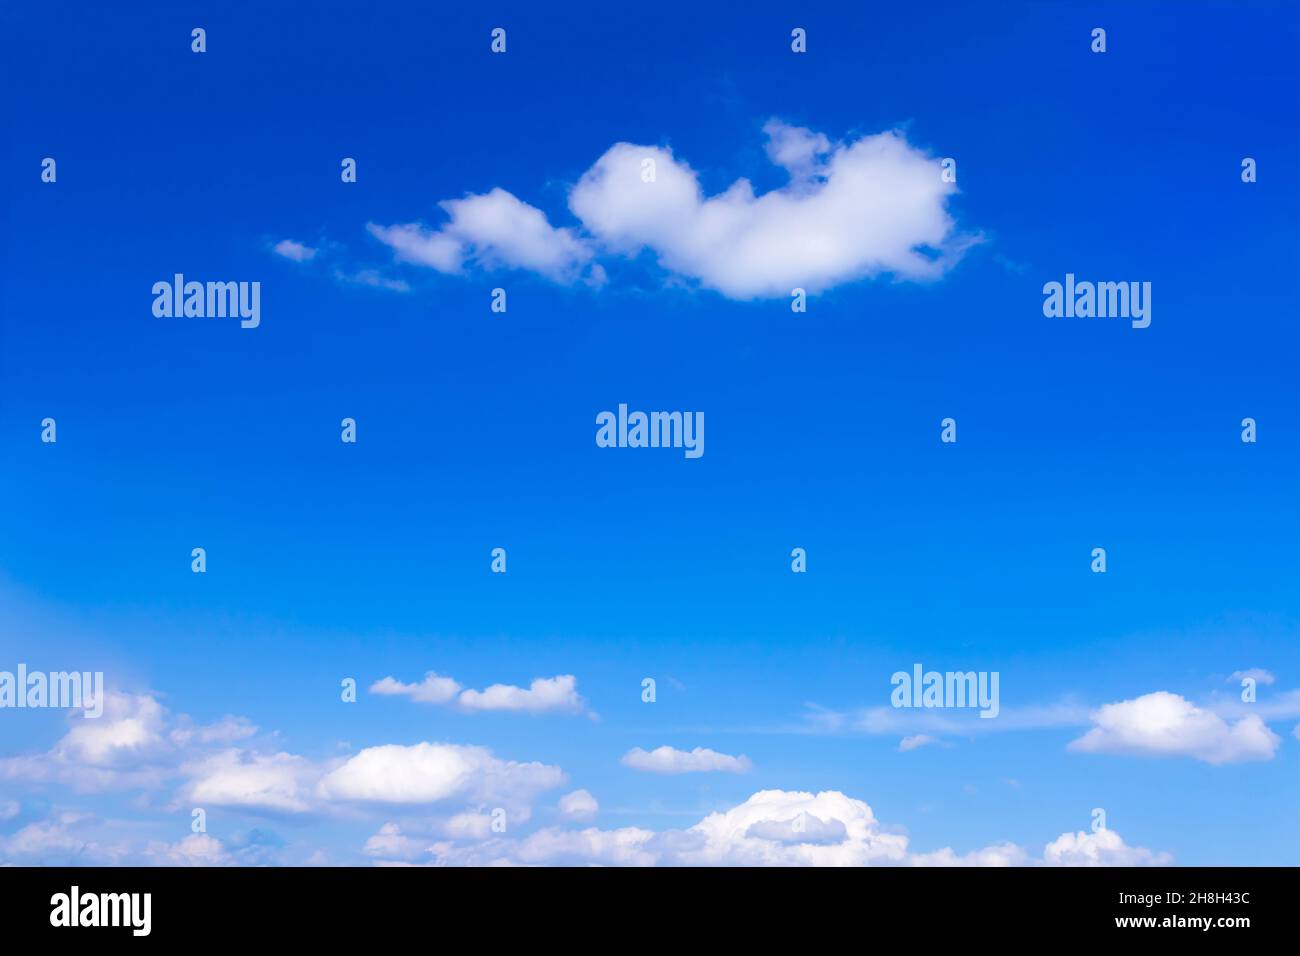 Cielo de verano azul brillante con unas pocas nubes blancas esponjosas, textura de fondo, copia o espacio de texto. Foto de stock